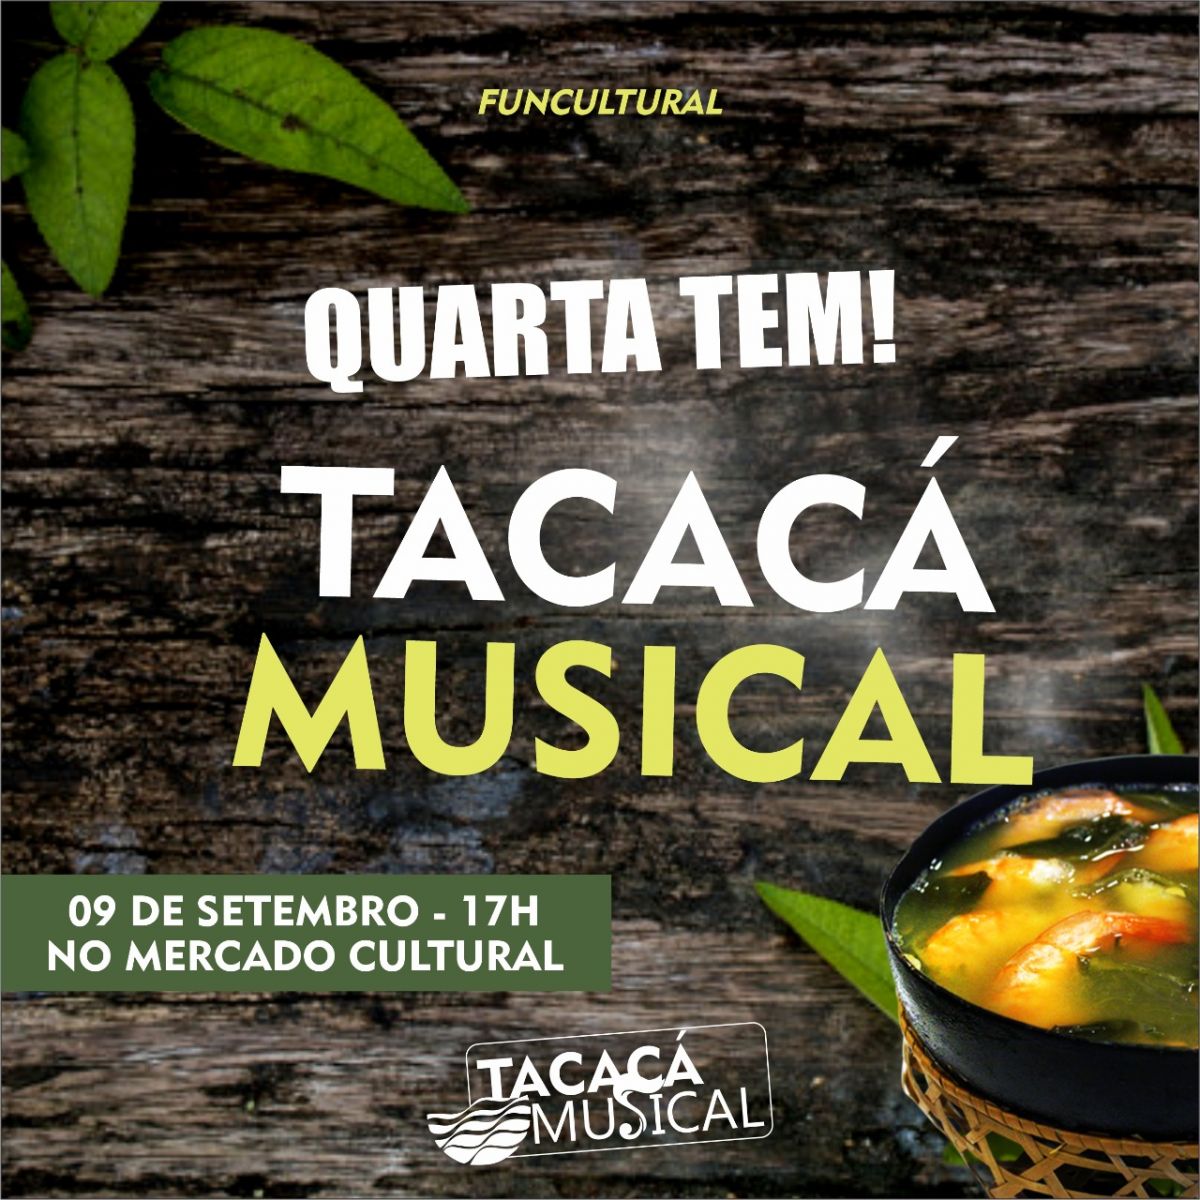 GASTRONOMIA & CULTURA: Culinária Venezuelana no cardápio do Tacacá Musical desta quarta-feira - News Rondônia